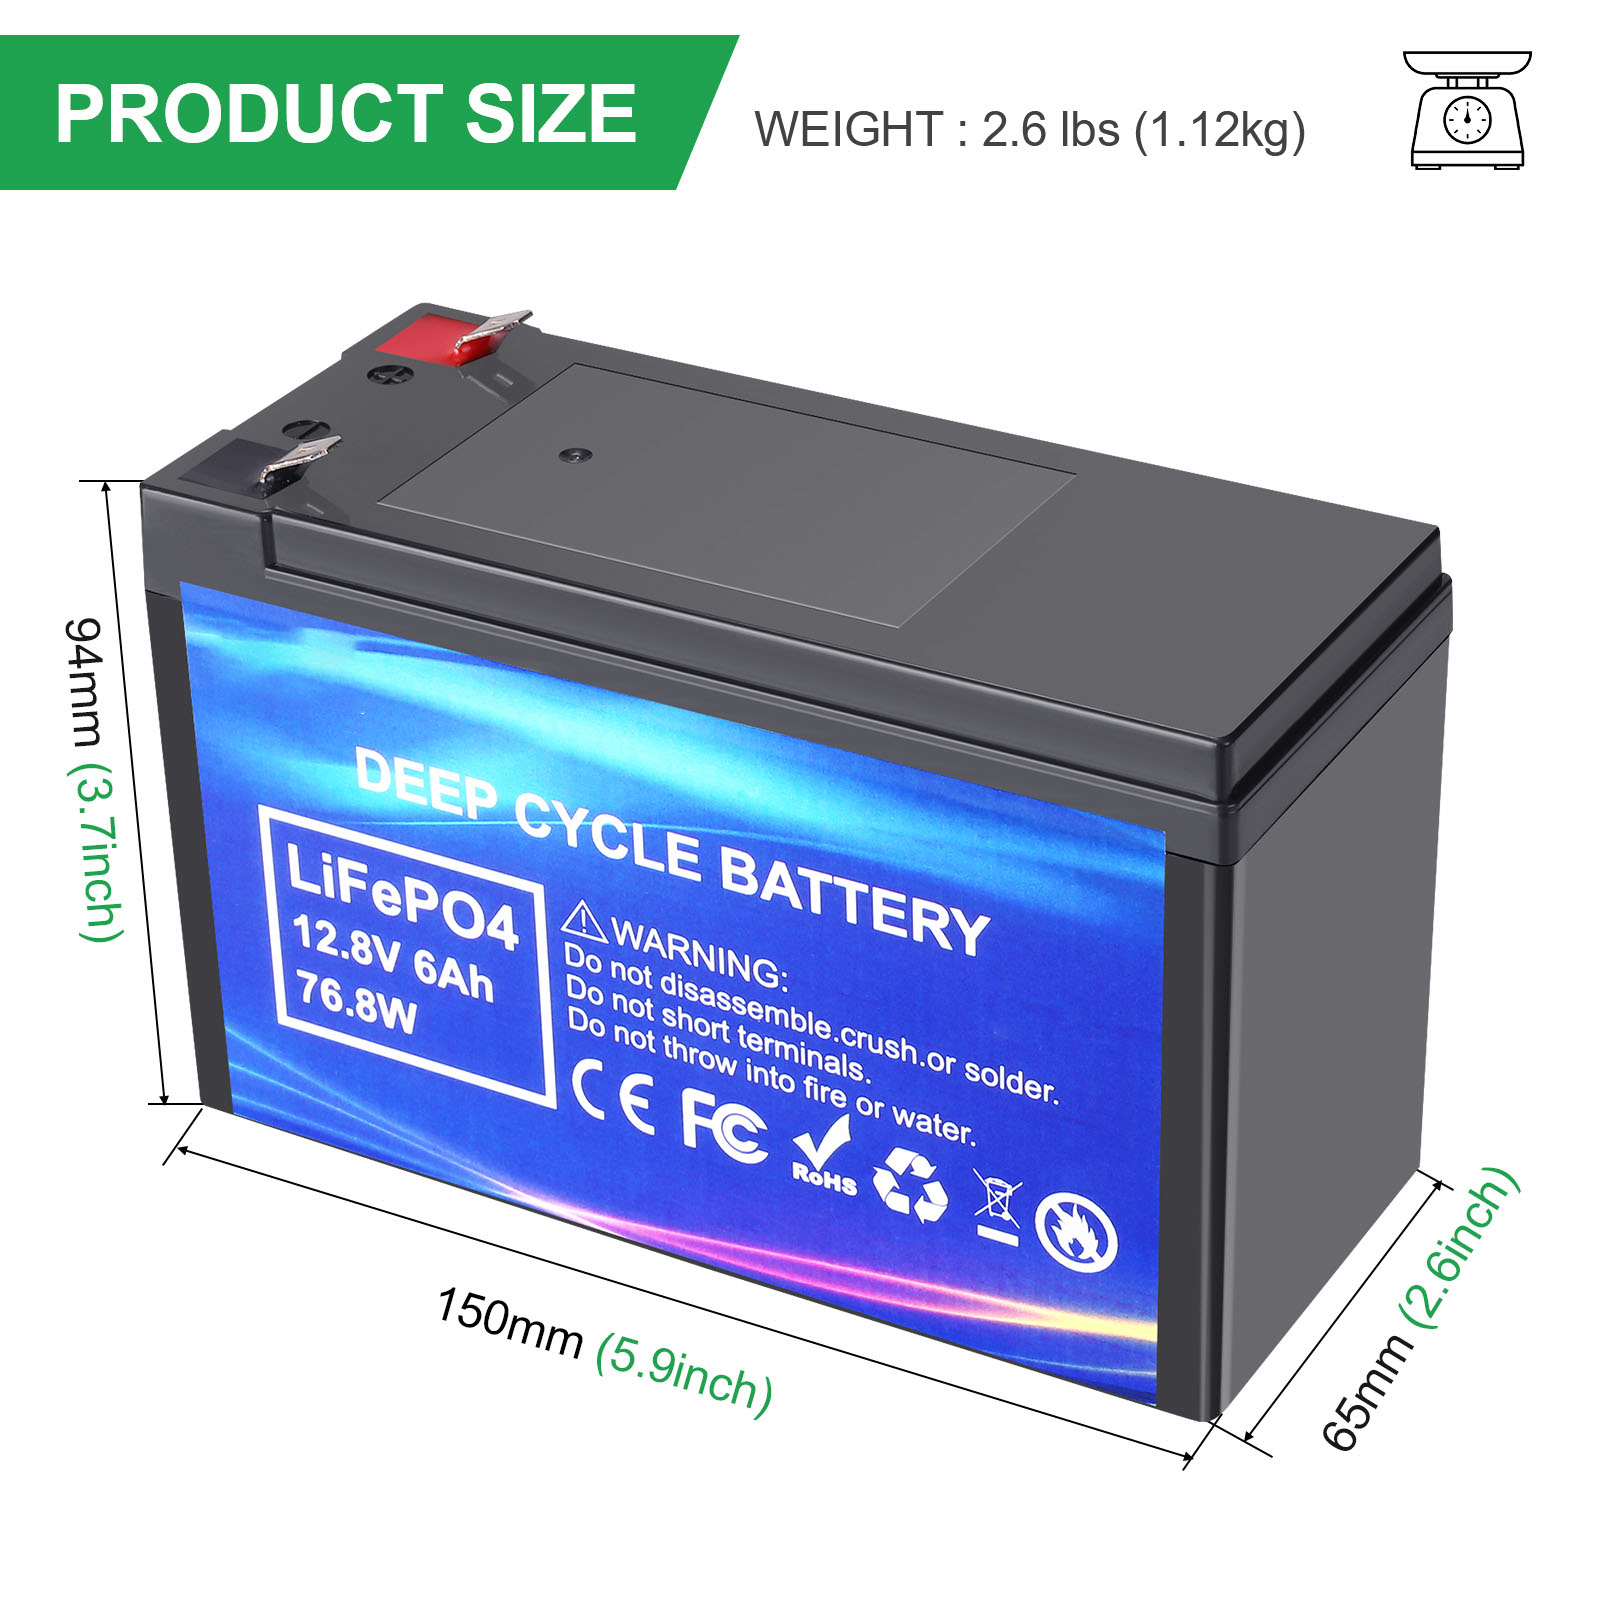 Batterie LifePO4 rechargeable à cycle profond 12.8V 6AH pour l'appareil électronique